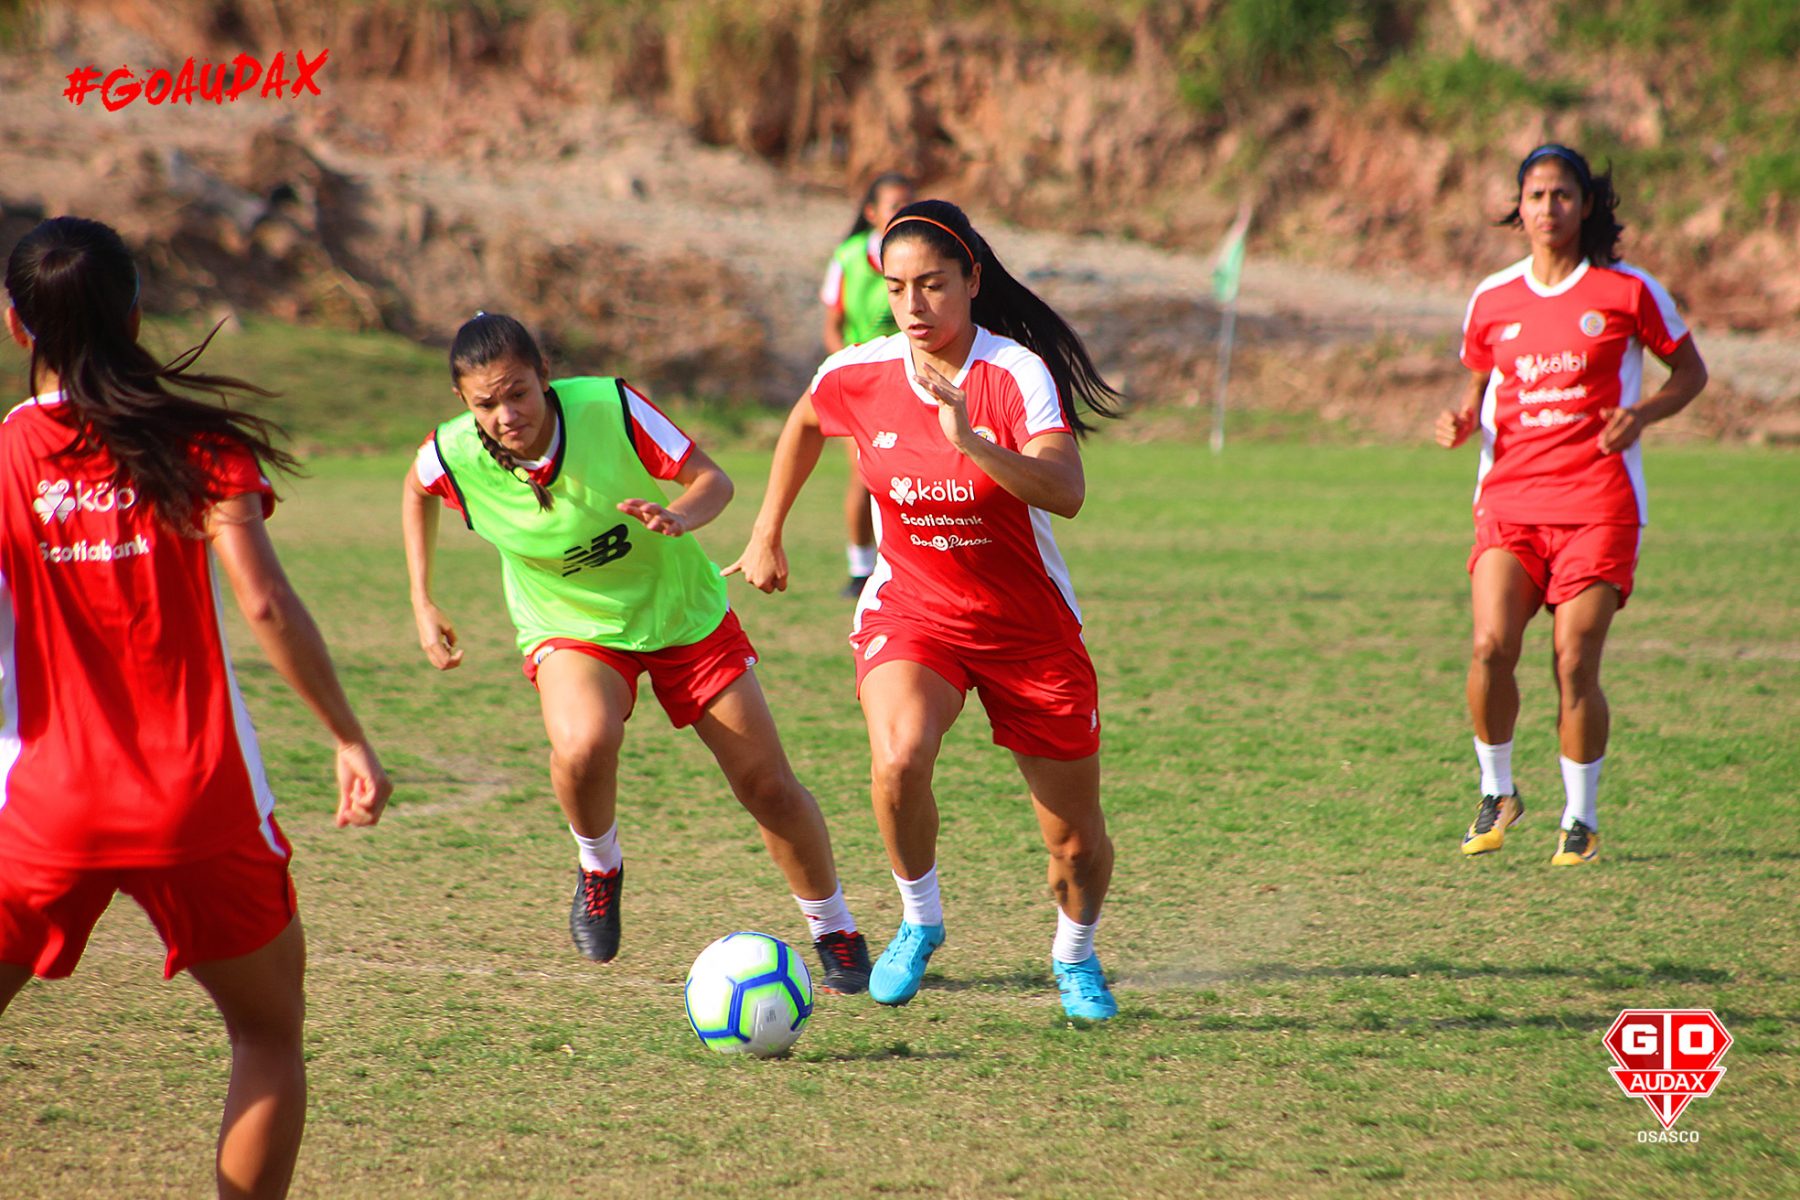 De olho em torneio no Brasil, seleção feminina da Costa Rica treina no CT do Audax